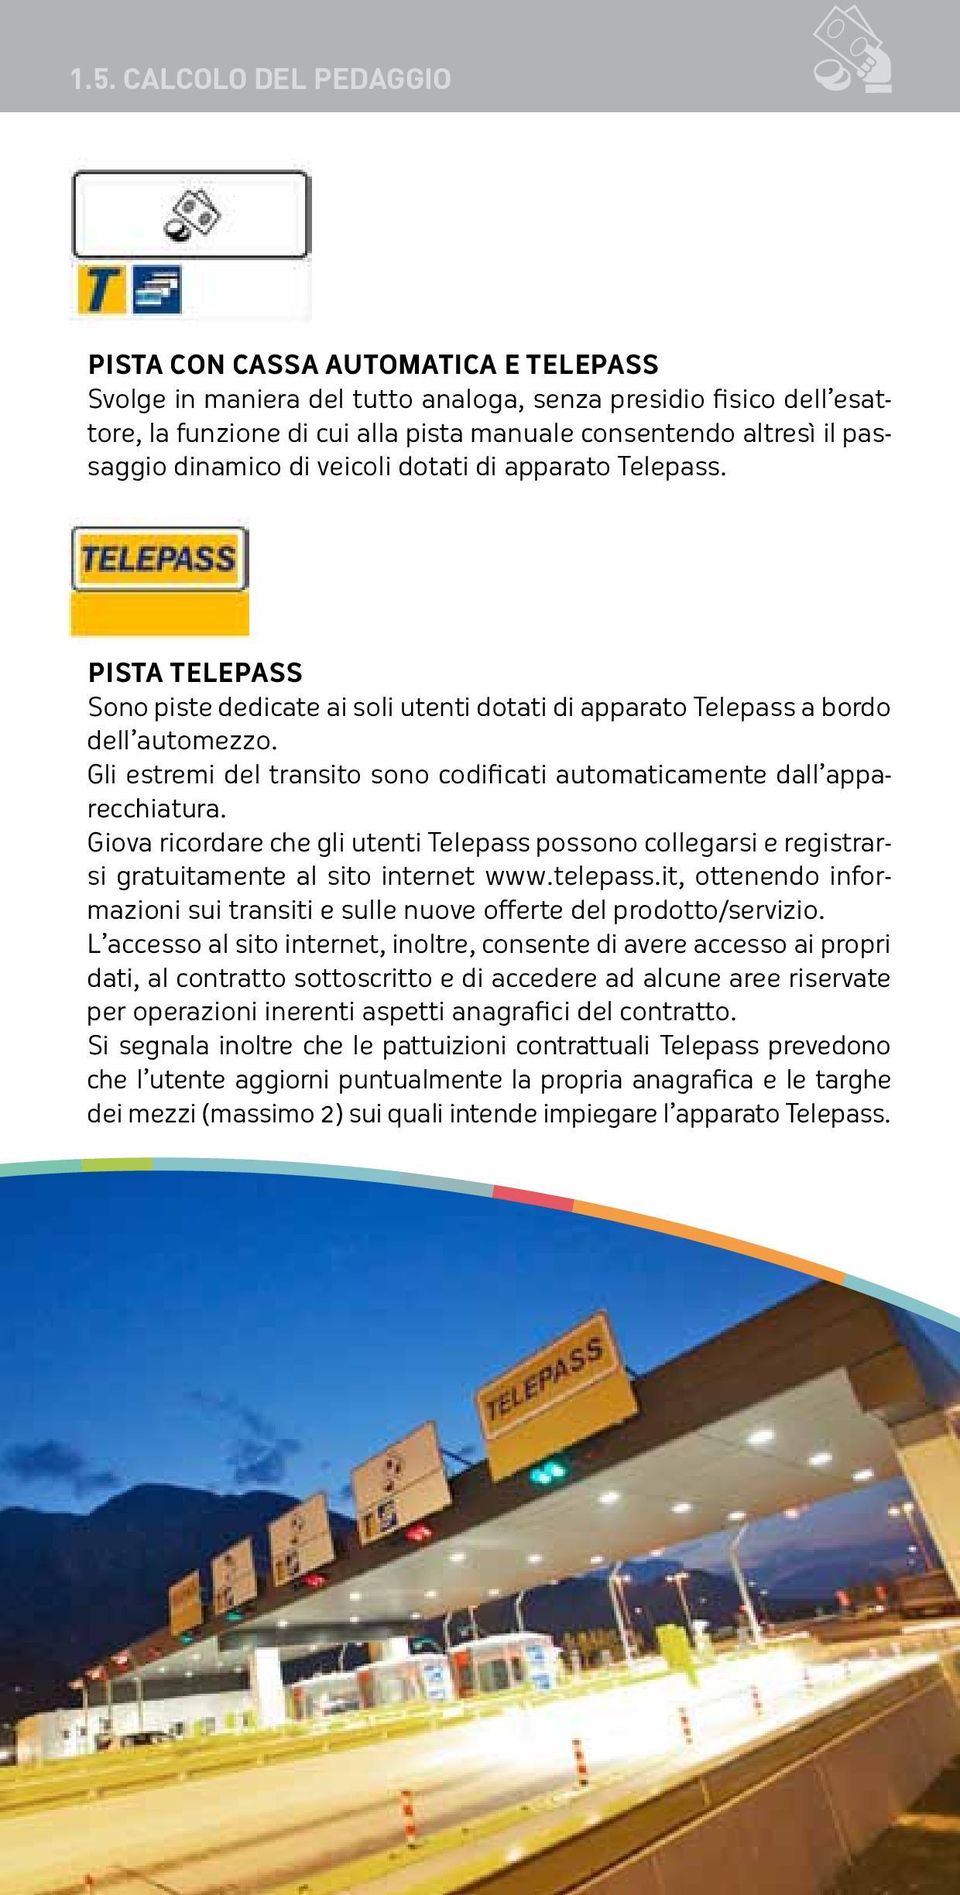 Gli estremi del transito sono codificati automaticamente dall apparecchiatura. Giova ricordare che gli utenti Telepass possono collegarsi e registrarsi gratuitamente al sito internet www.telepass.